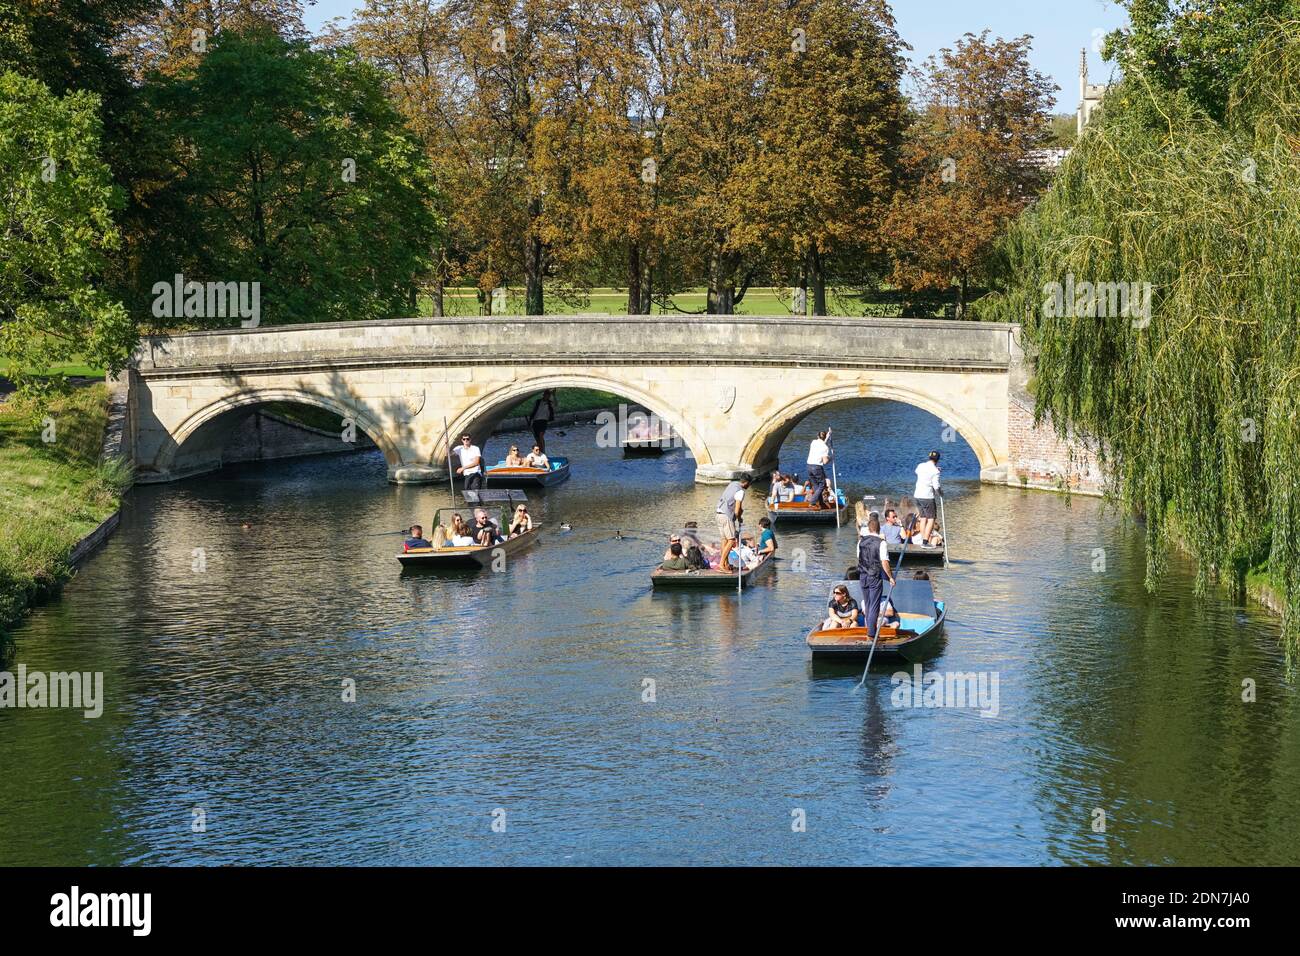 Des gens qui puntent sous Trinity College Bridge sur la rivière Cam à Cambridge, Cambridgeshire Angleterre Royaume-Uni Banque D'Images